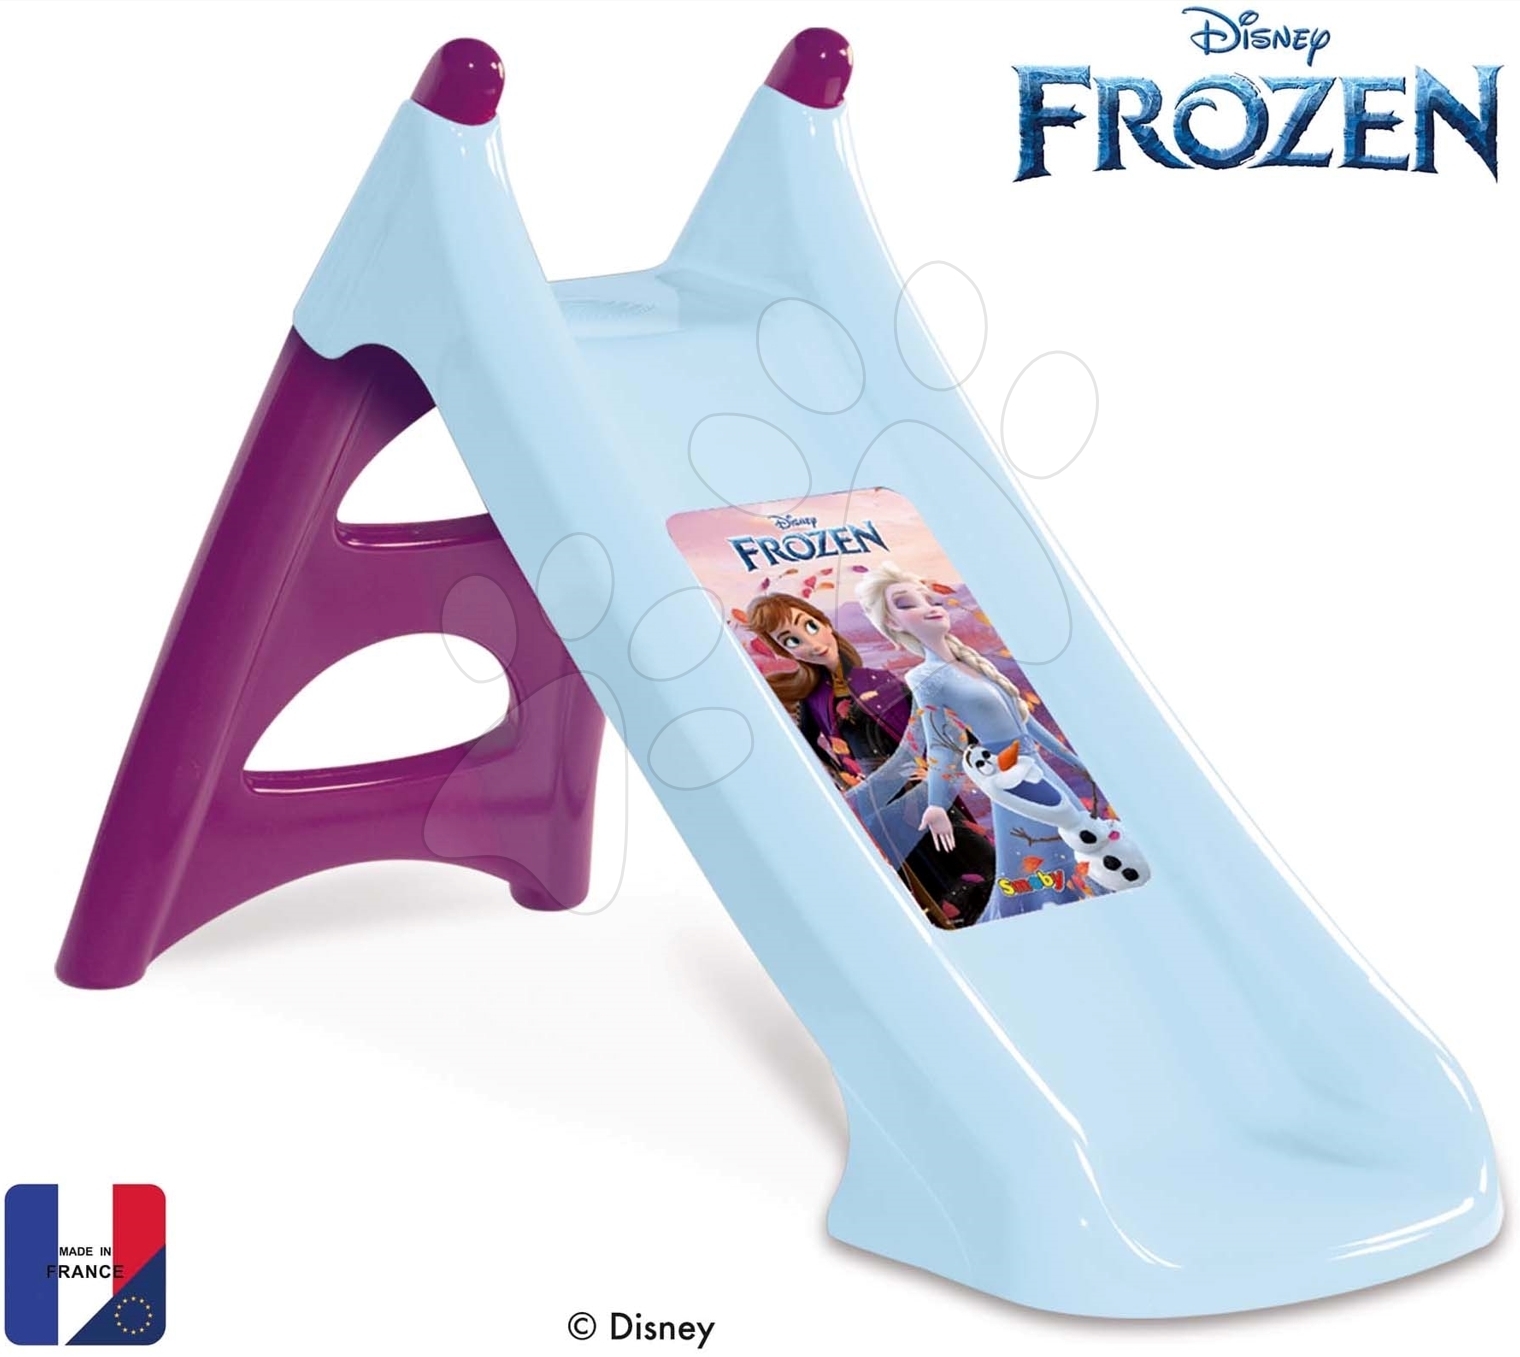 Skluzavka s vlhčením Frozen XS Slide Smoby 90 cm s napájením na vodu a UV filtr od 24 měsíců